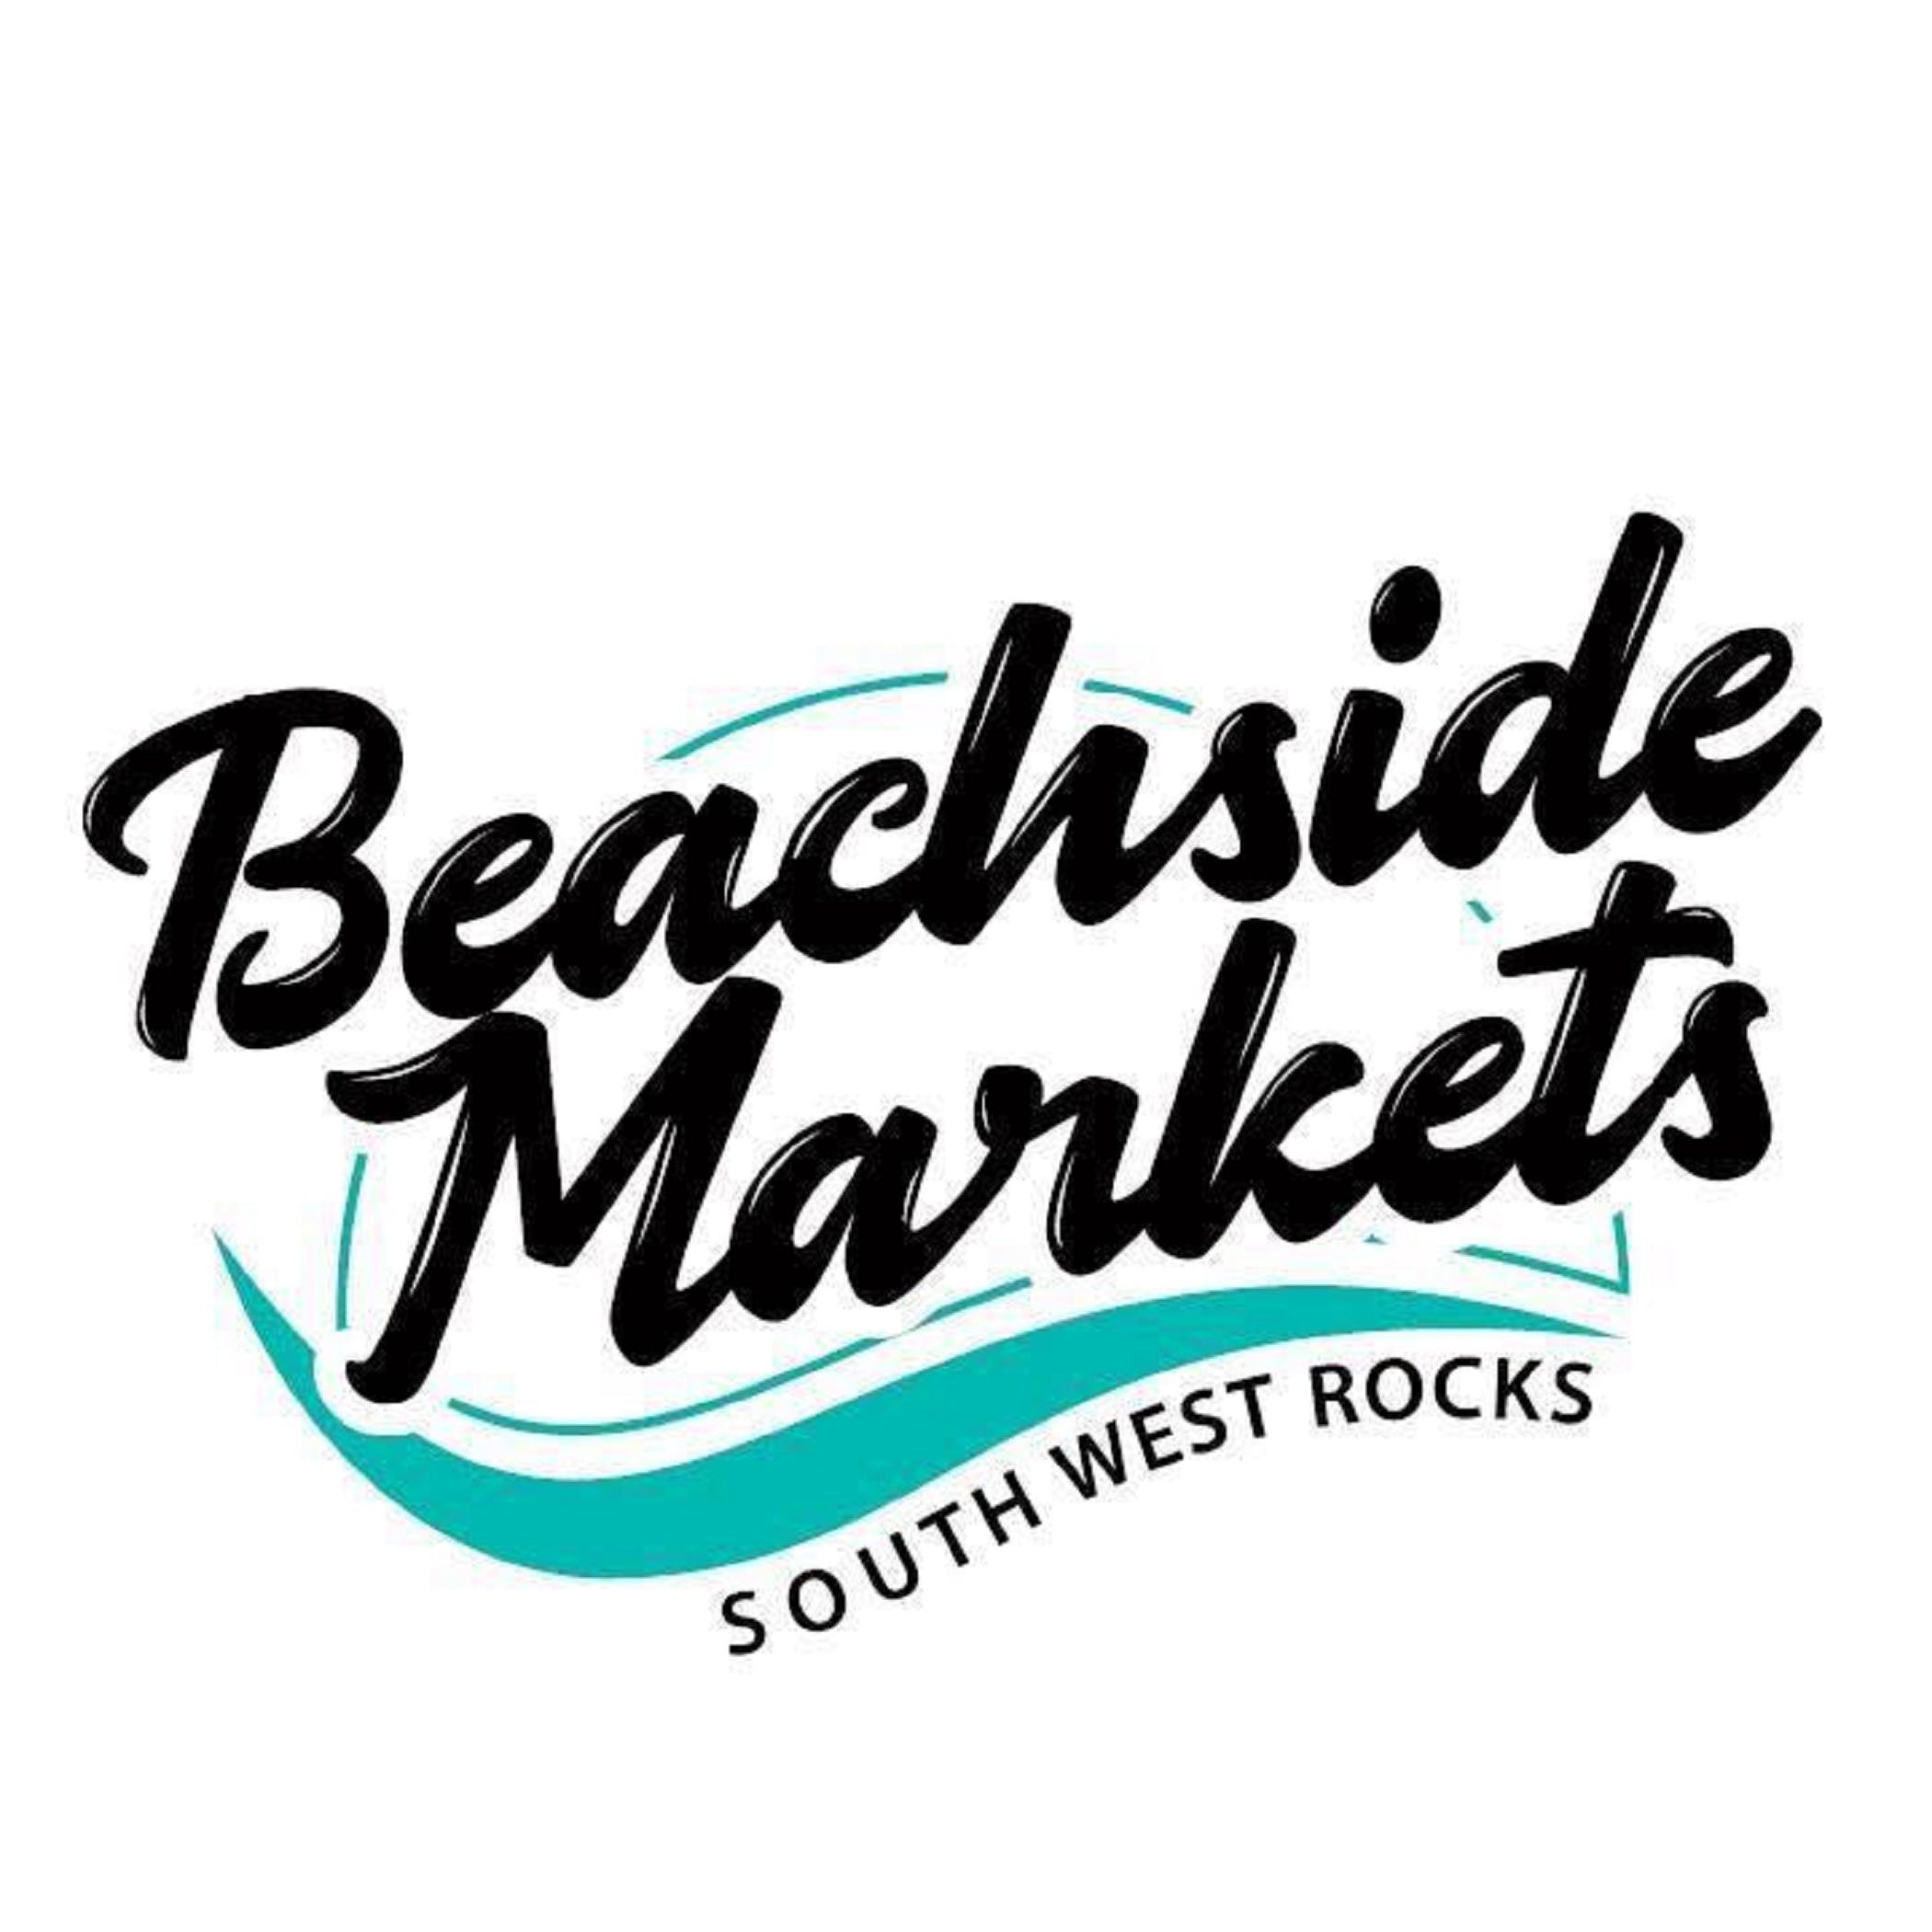 Beachside Markets South West Rocks - Nambucca Heads Accommodation